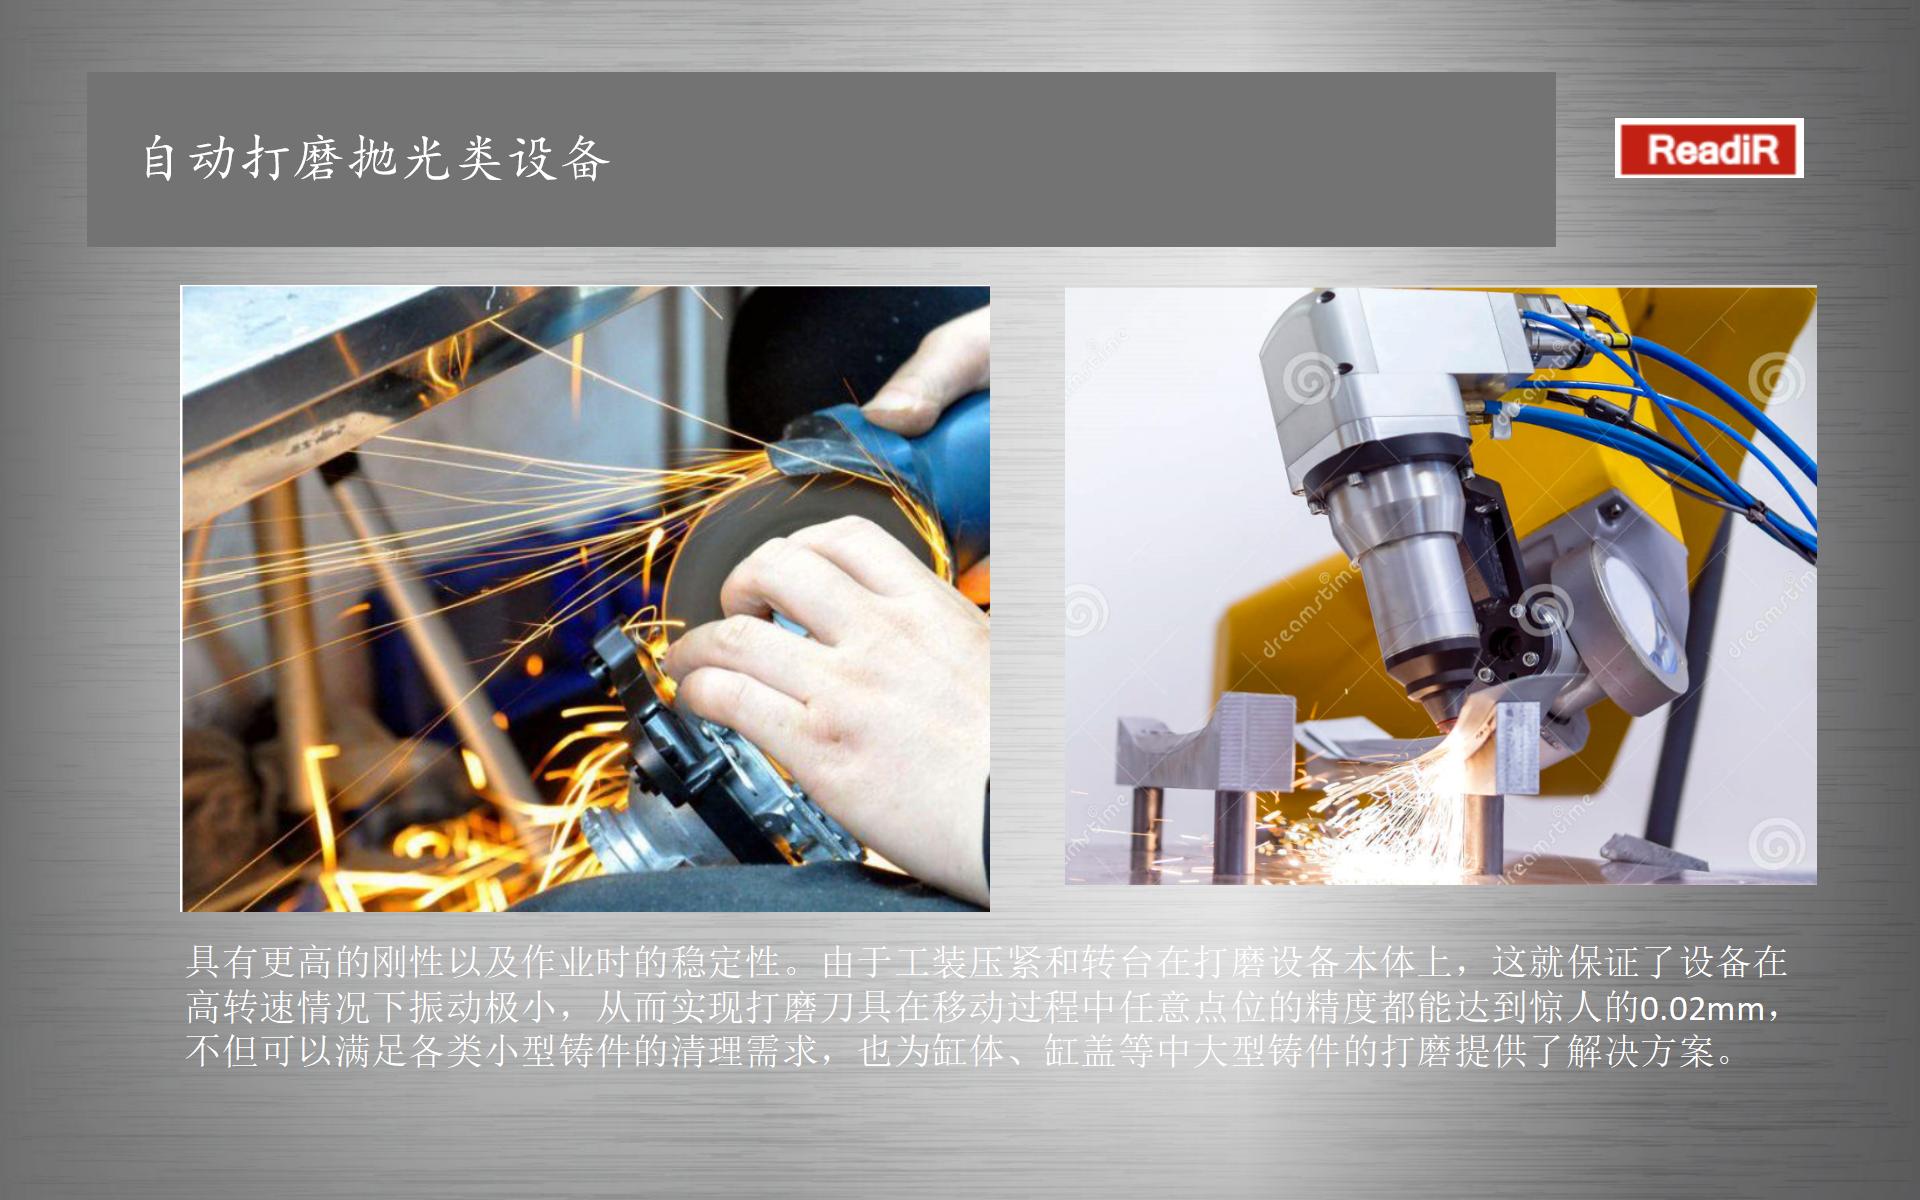 北京自动打磨公司铸件打磨设备ST-DM09 打磨自动化应用